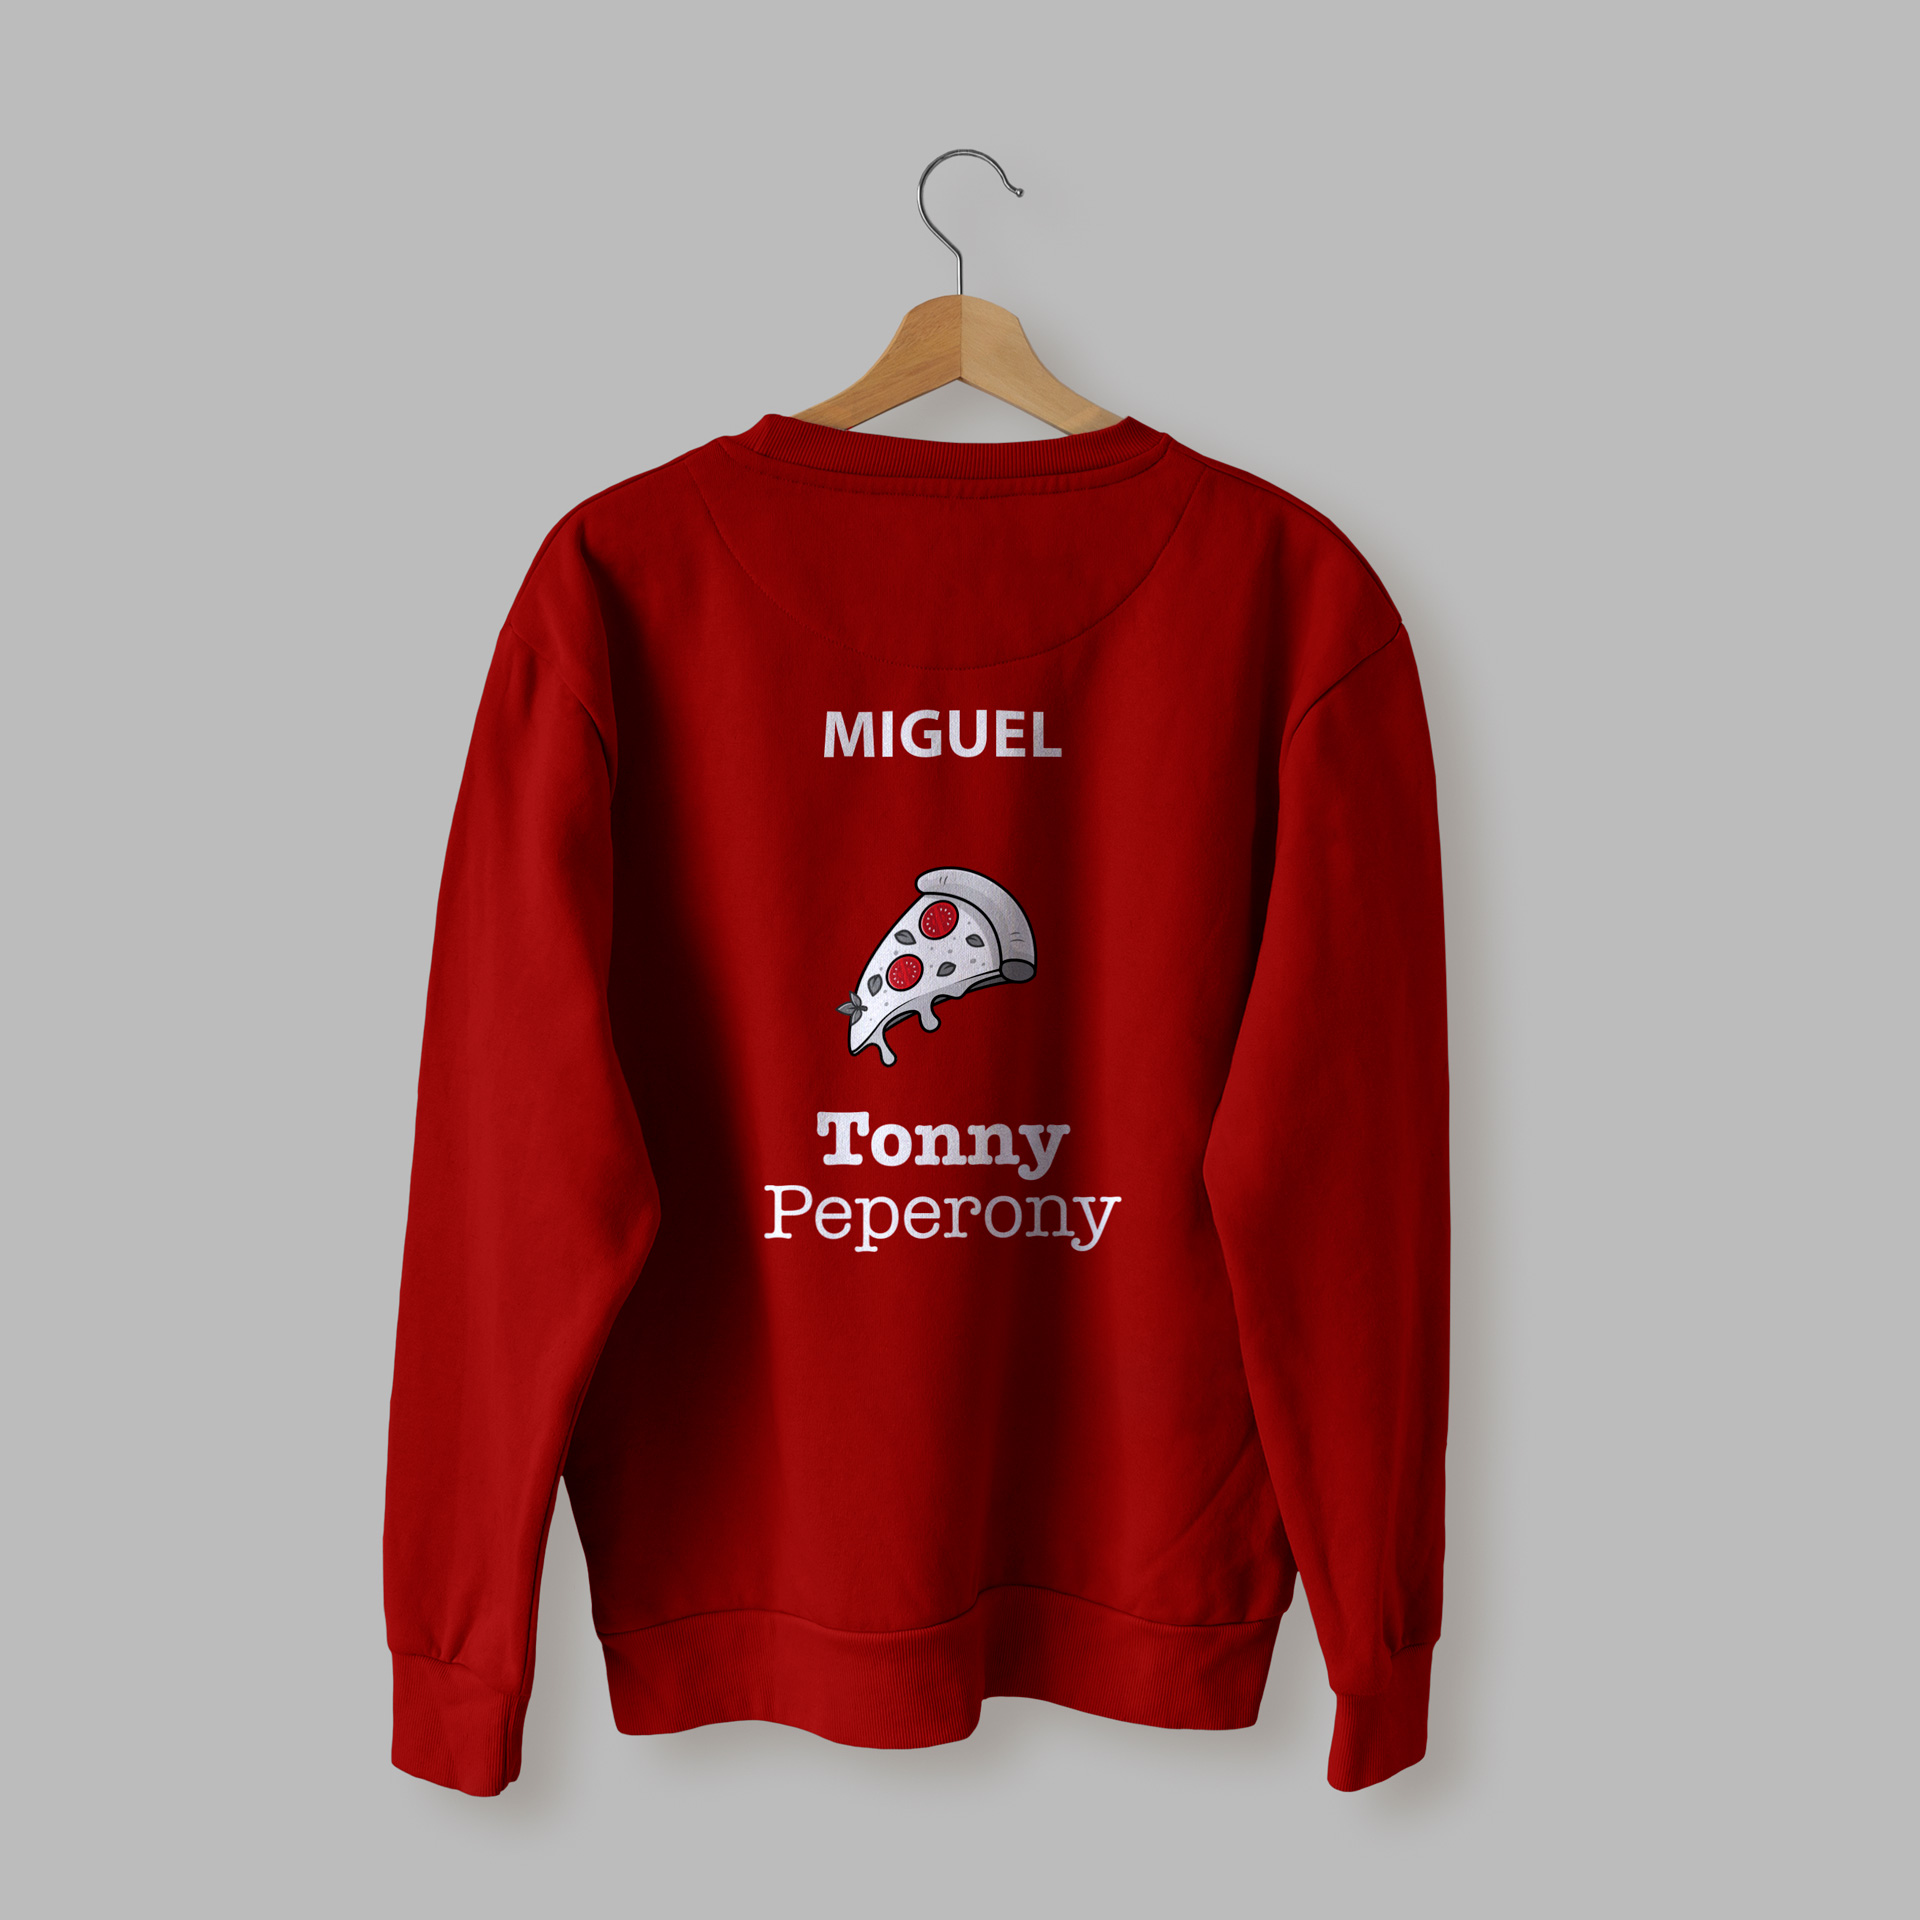 Imagen de la sudadera sin capucha de la pizzería Tonny Peperony de color rojo, rotulada con el logotipo de la empresa y la pizza, por la parte de la espalda, cubriendo toda la zona y con el nombre del trabajador